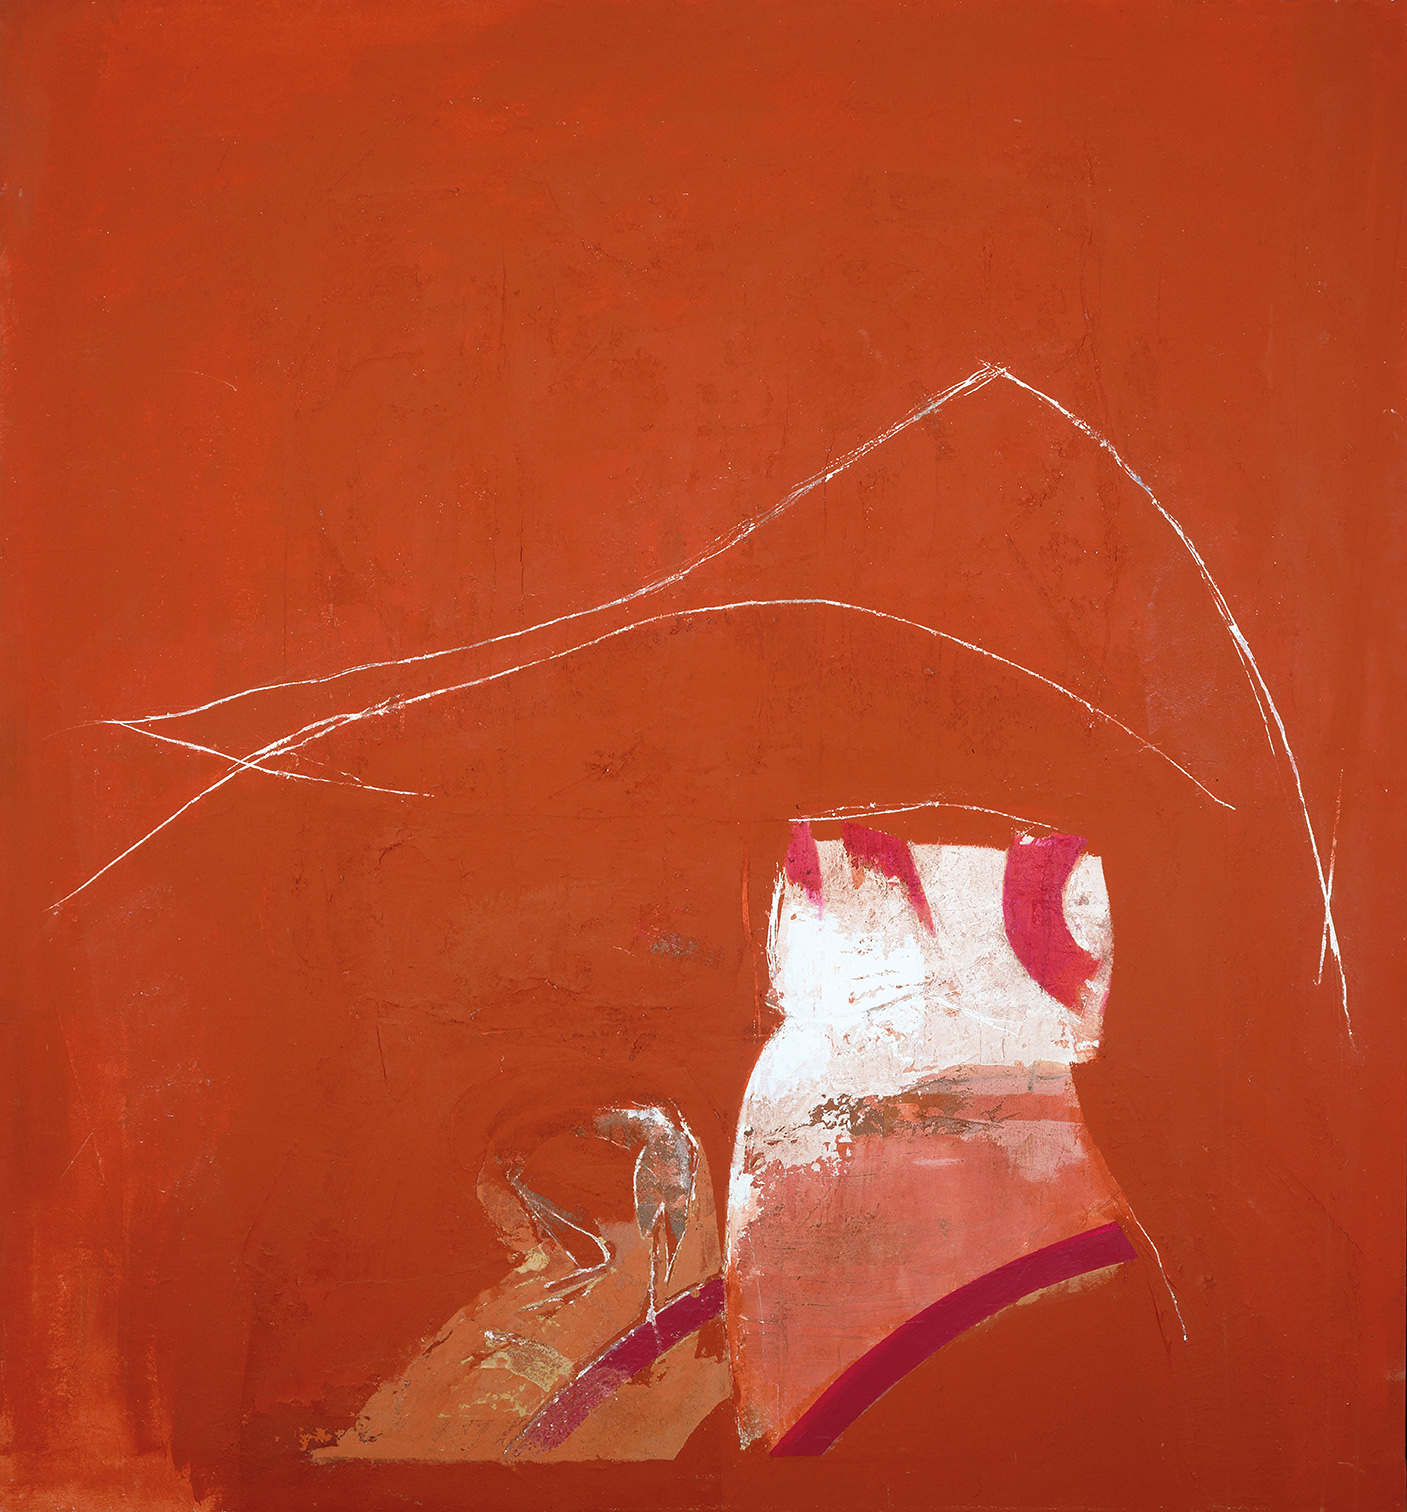 Rudolf Haegele, Schild der Athene, 1992, Mischtechnik, 156,5 cm x 145,5 cm, Preis auf Anfrage, Galerie Cyprian Brenner